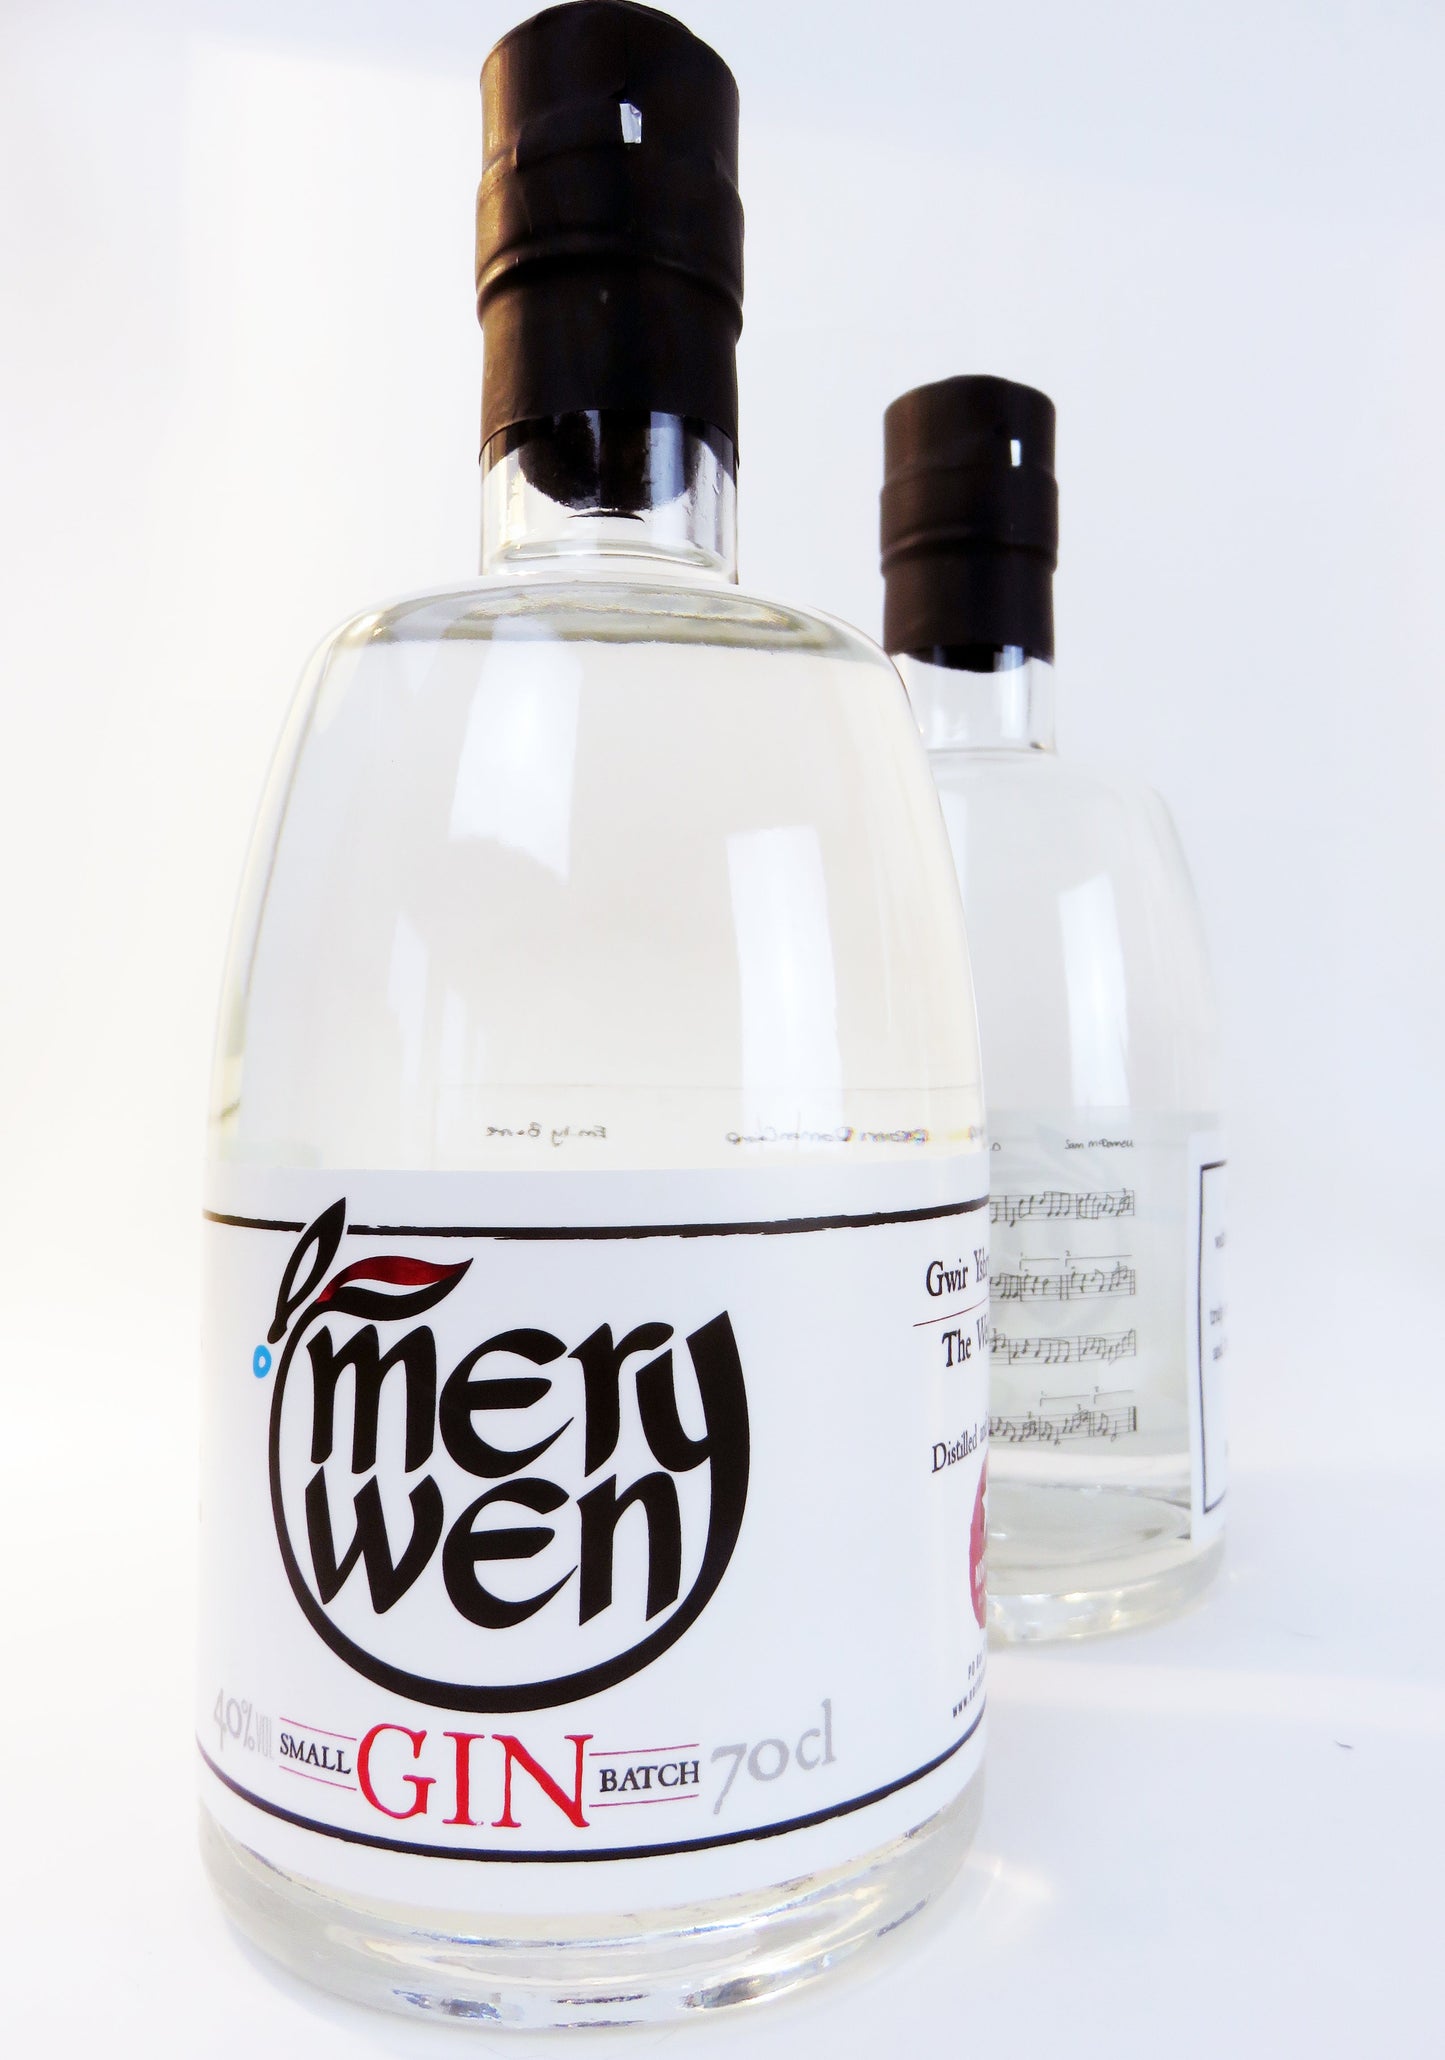 Merywen Gin